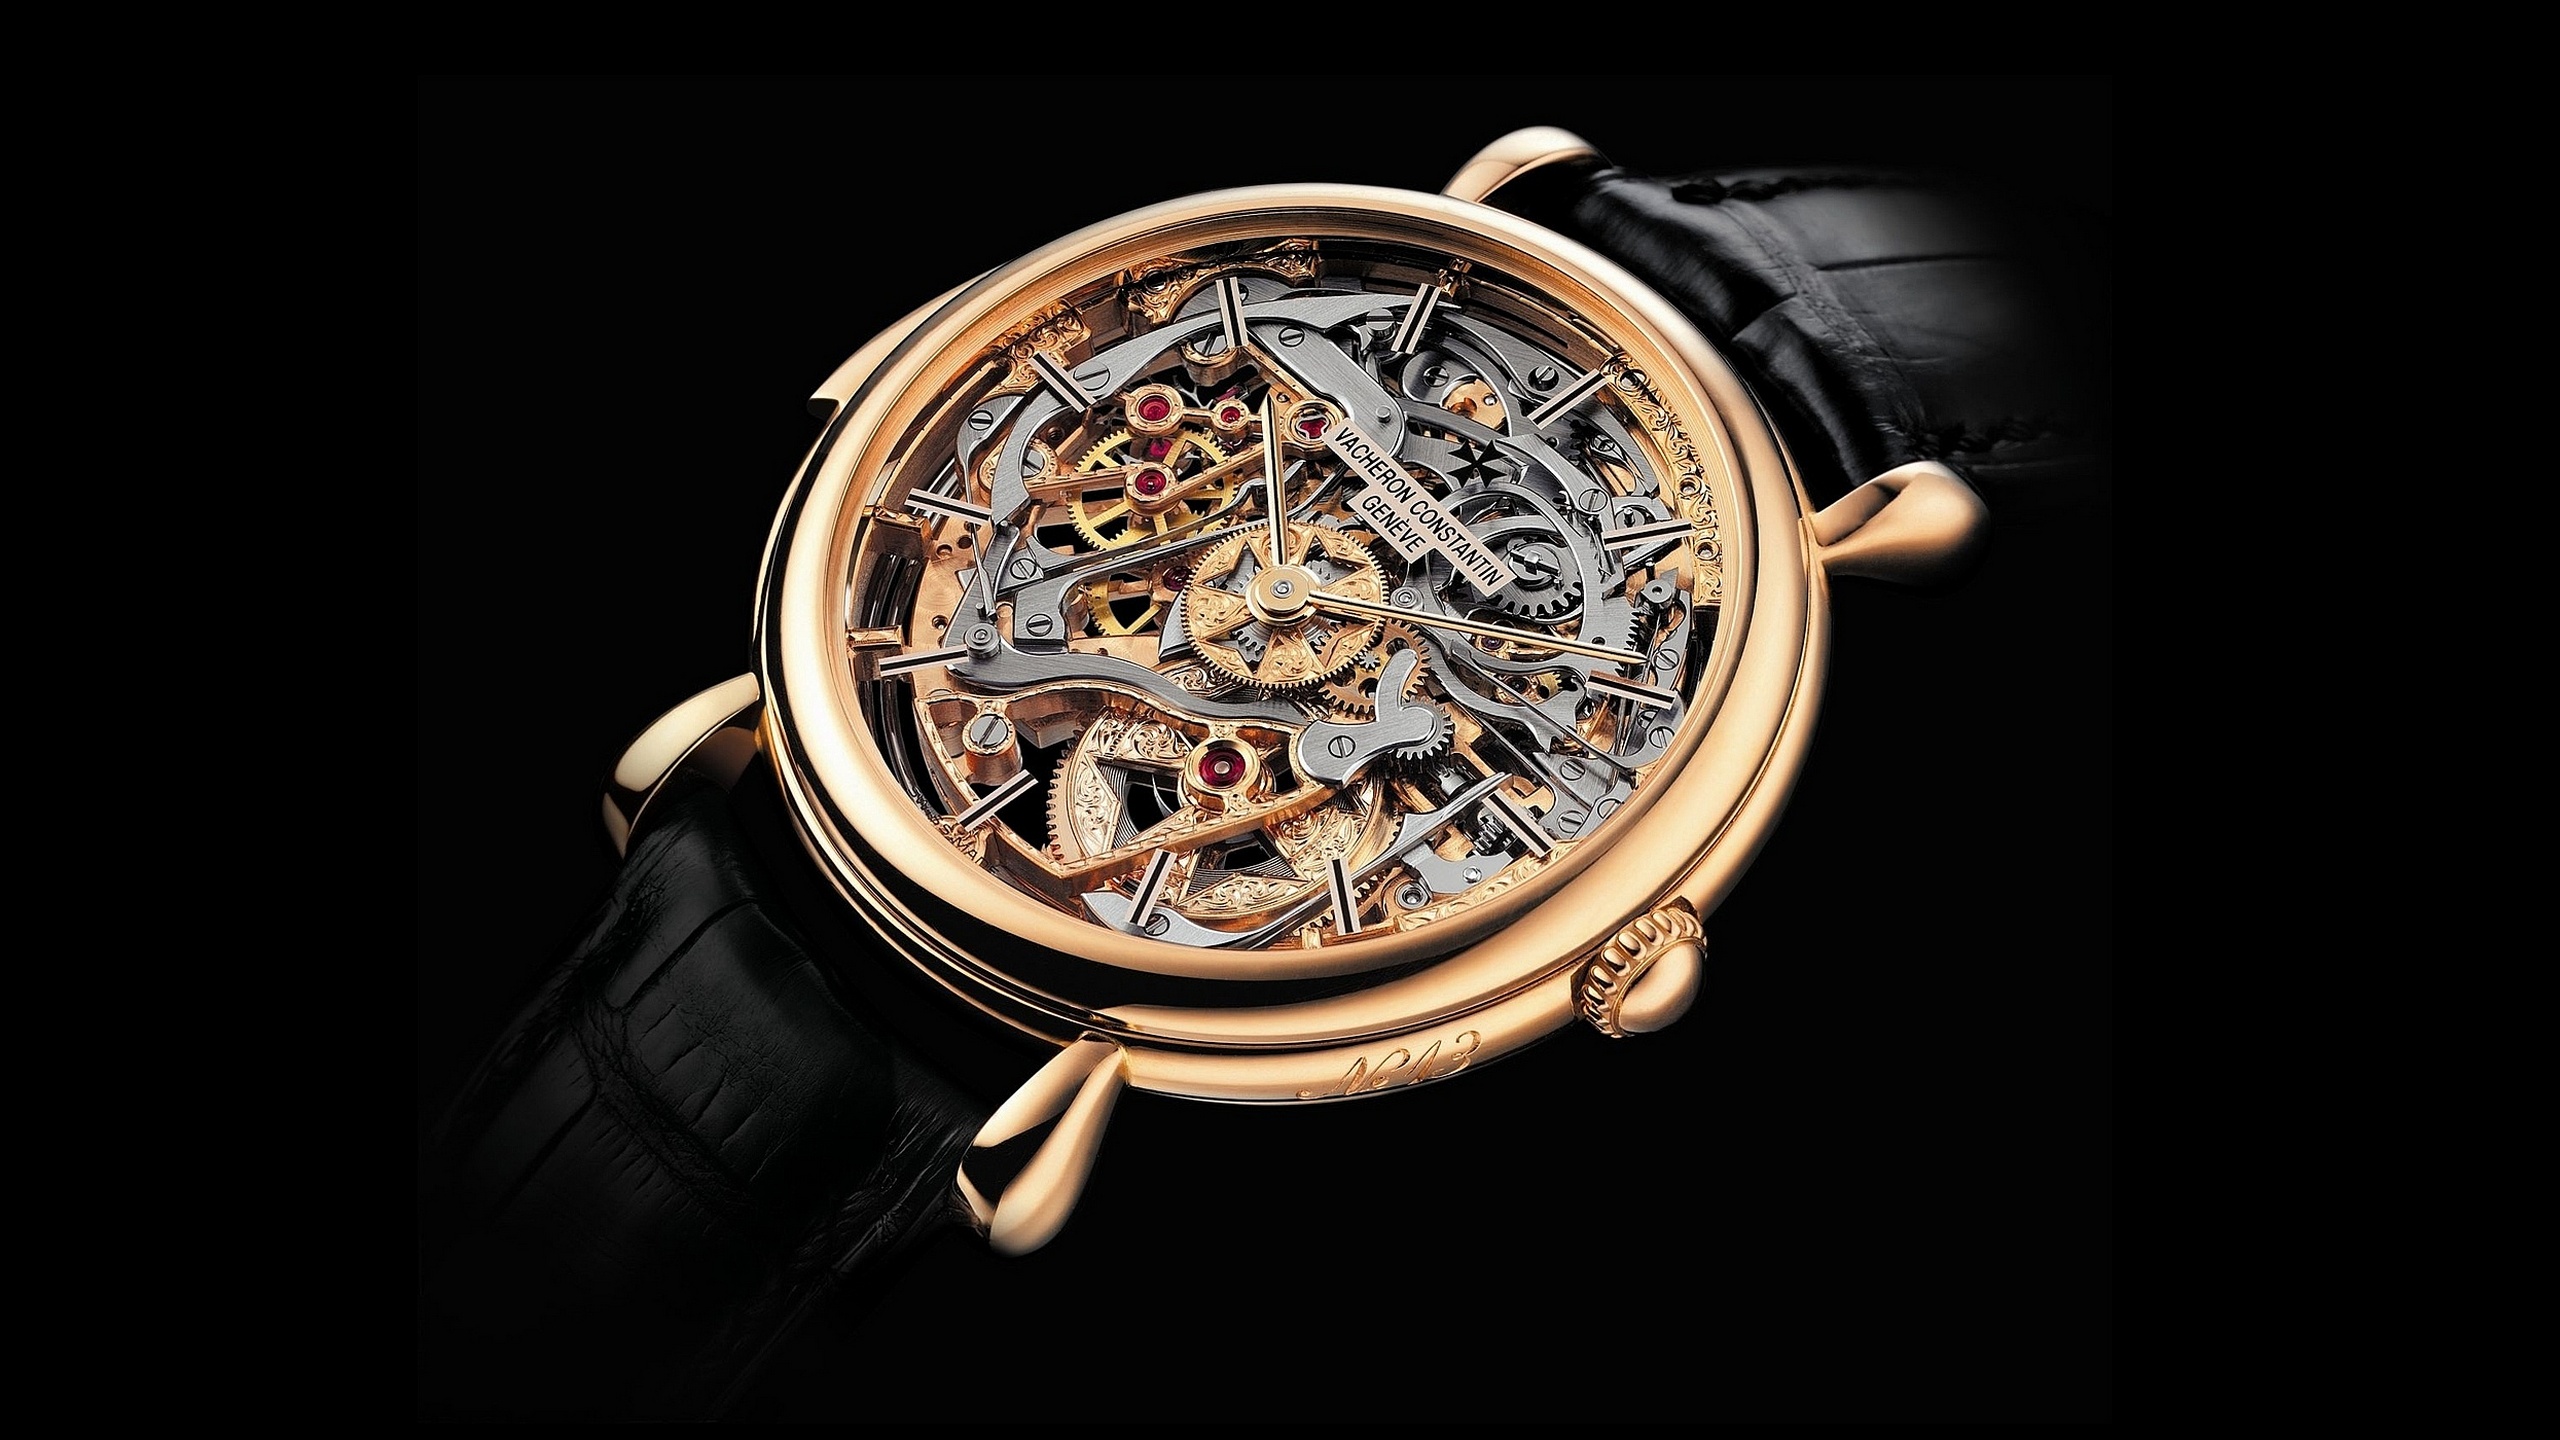 General 2560x1440 Vacheron Constantin watch luxury watches technology dark background simple background closeup